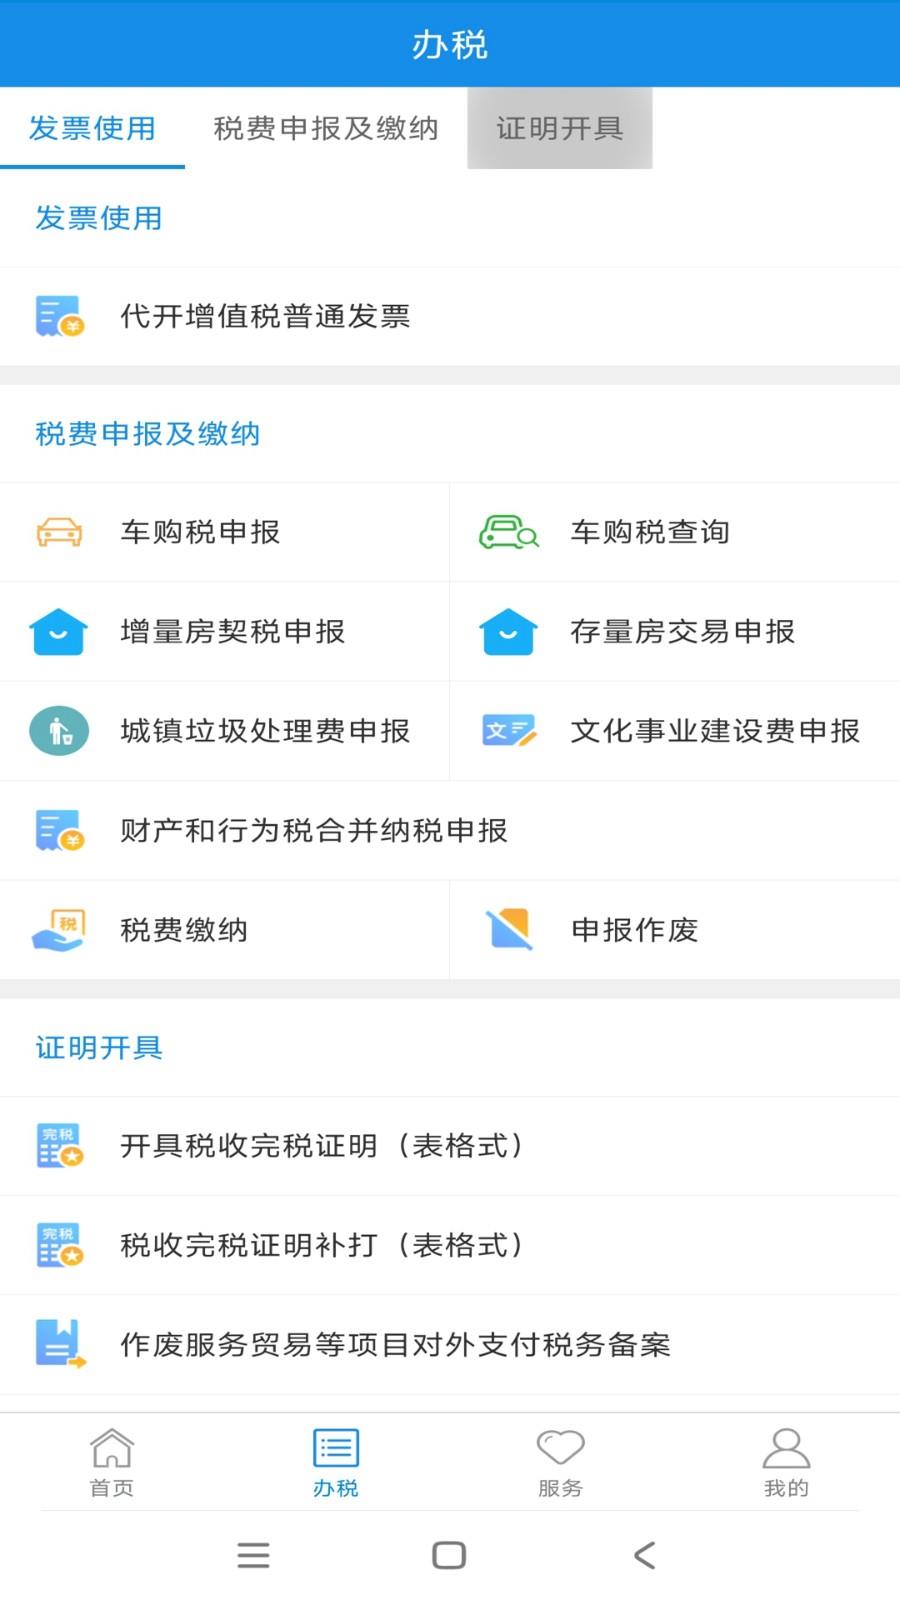 新疆税务电子税务局手机版 v3.38.0 官方安卓版 1